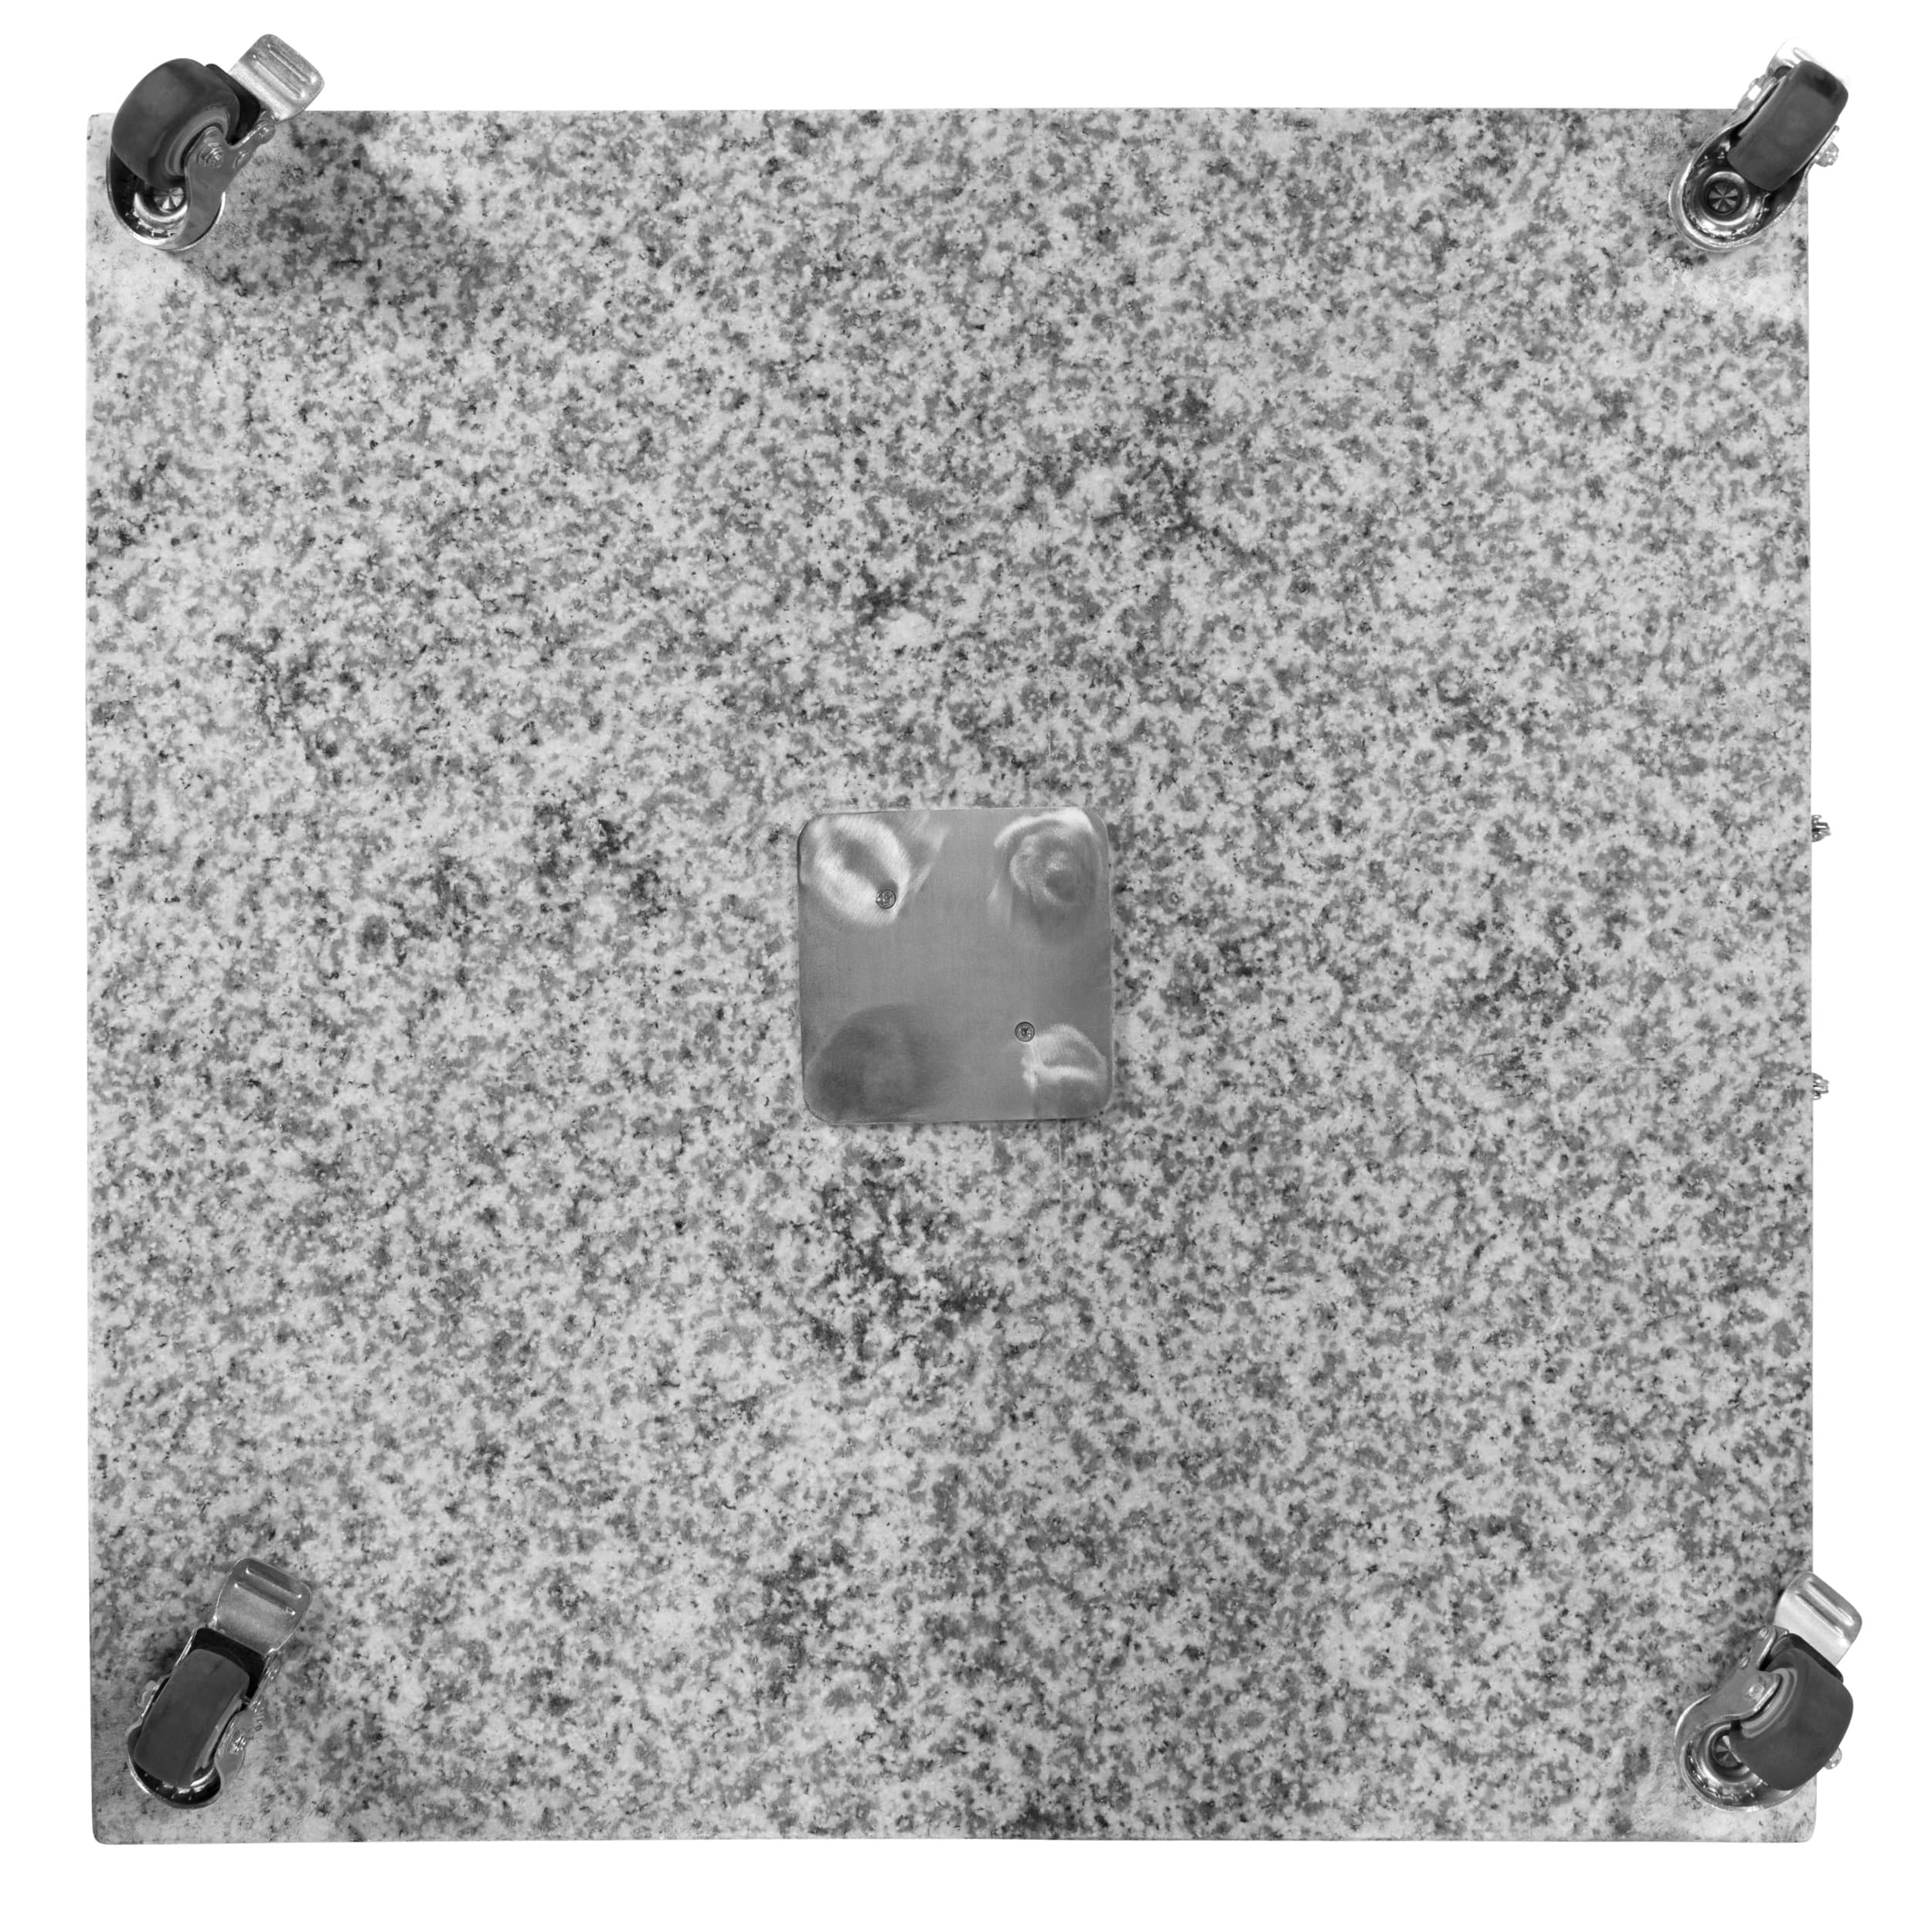 Doppler Granit Grundplatte ca. 140kg, 80x80x8/14cm mit Rollen, Farbe grau, mit 4 Rollen